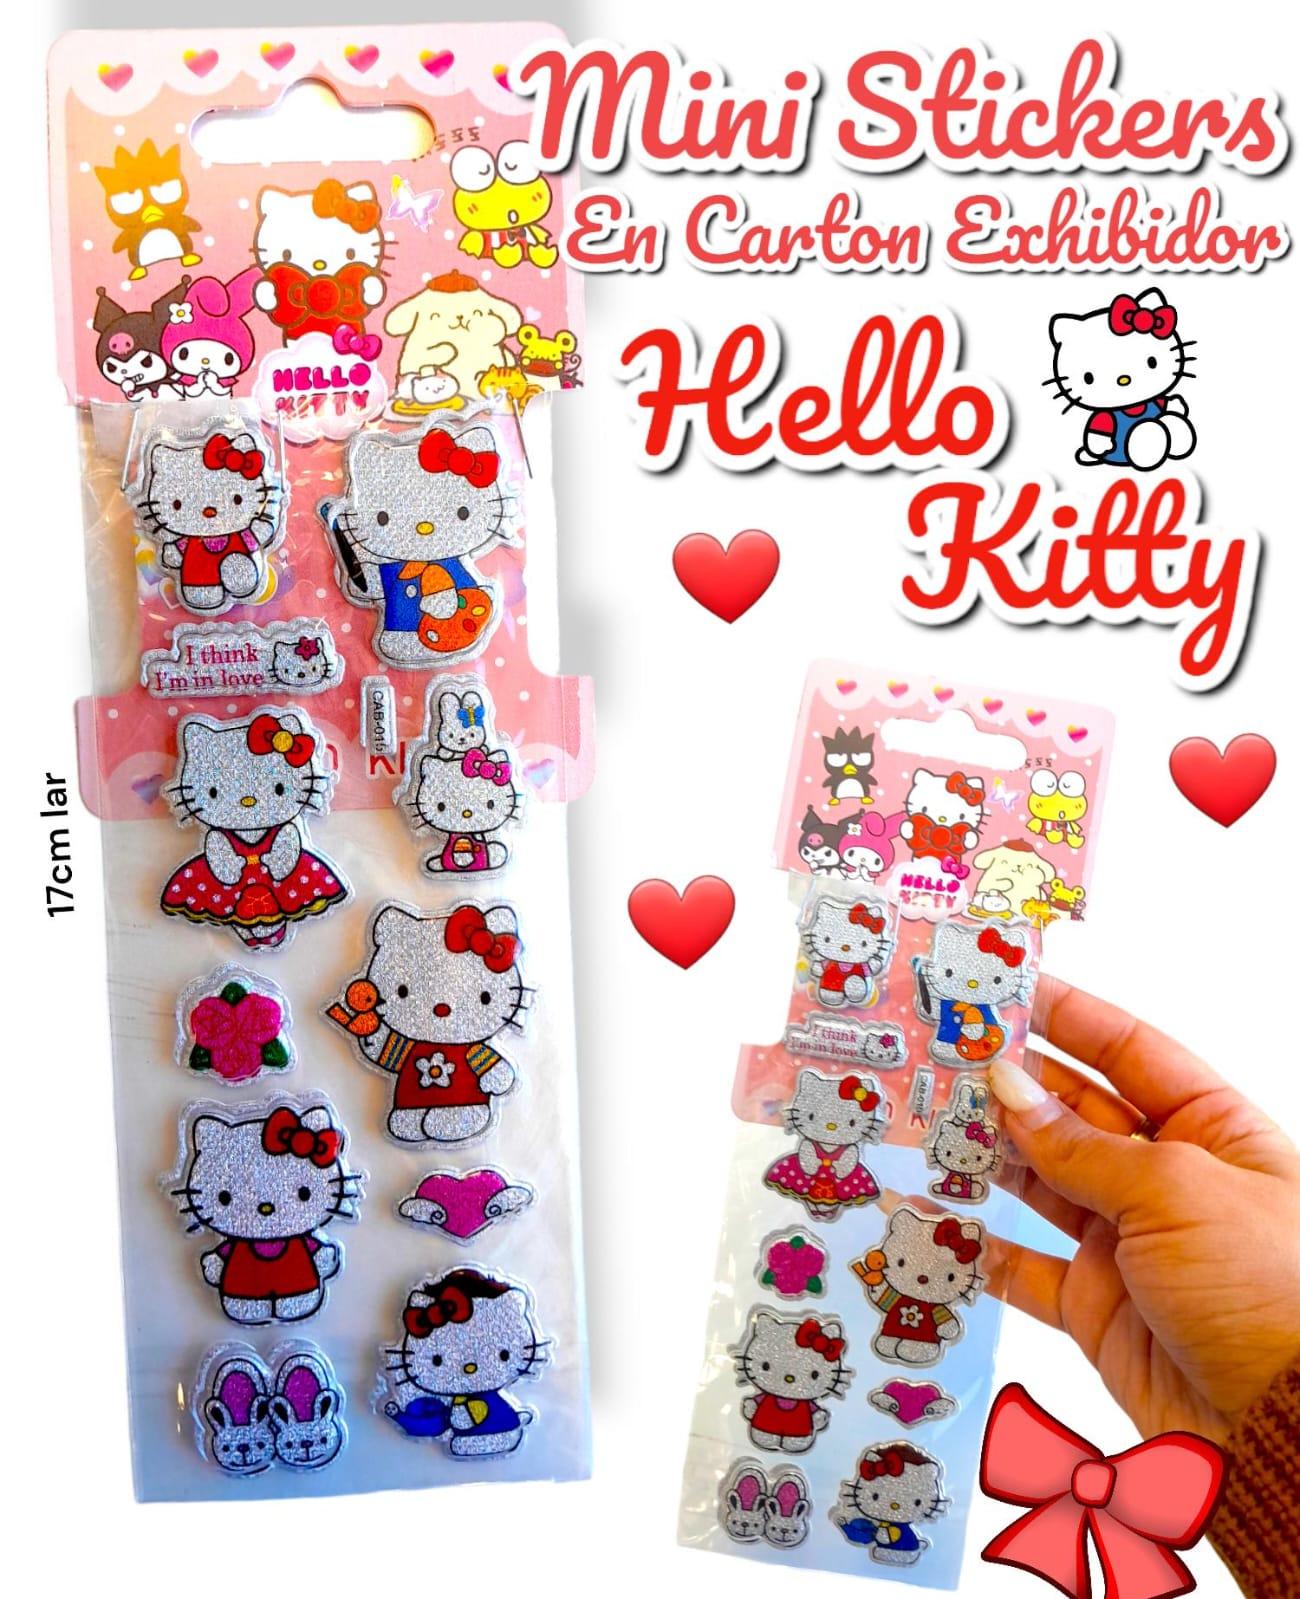 Mini Stickers En Carton Exhibidor HELLO KITTY 